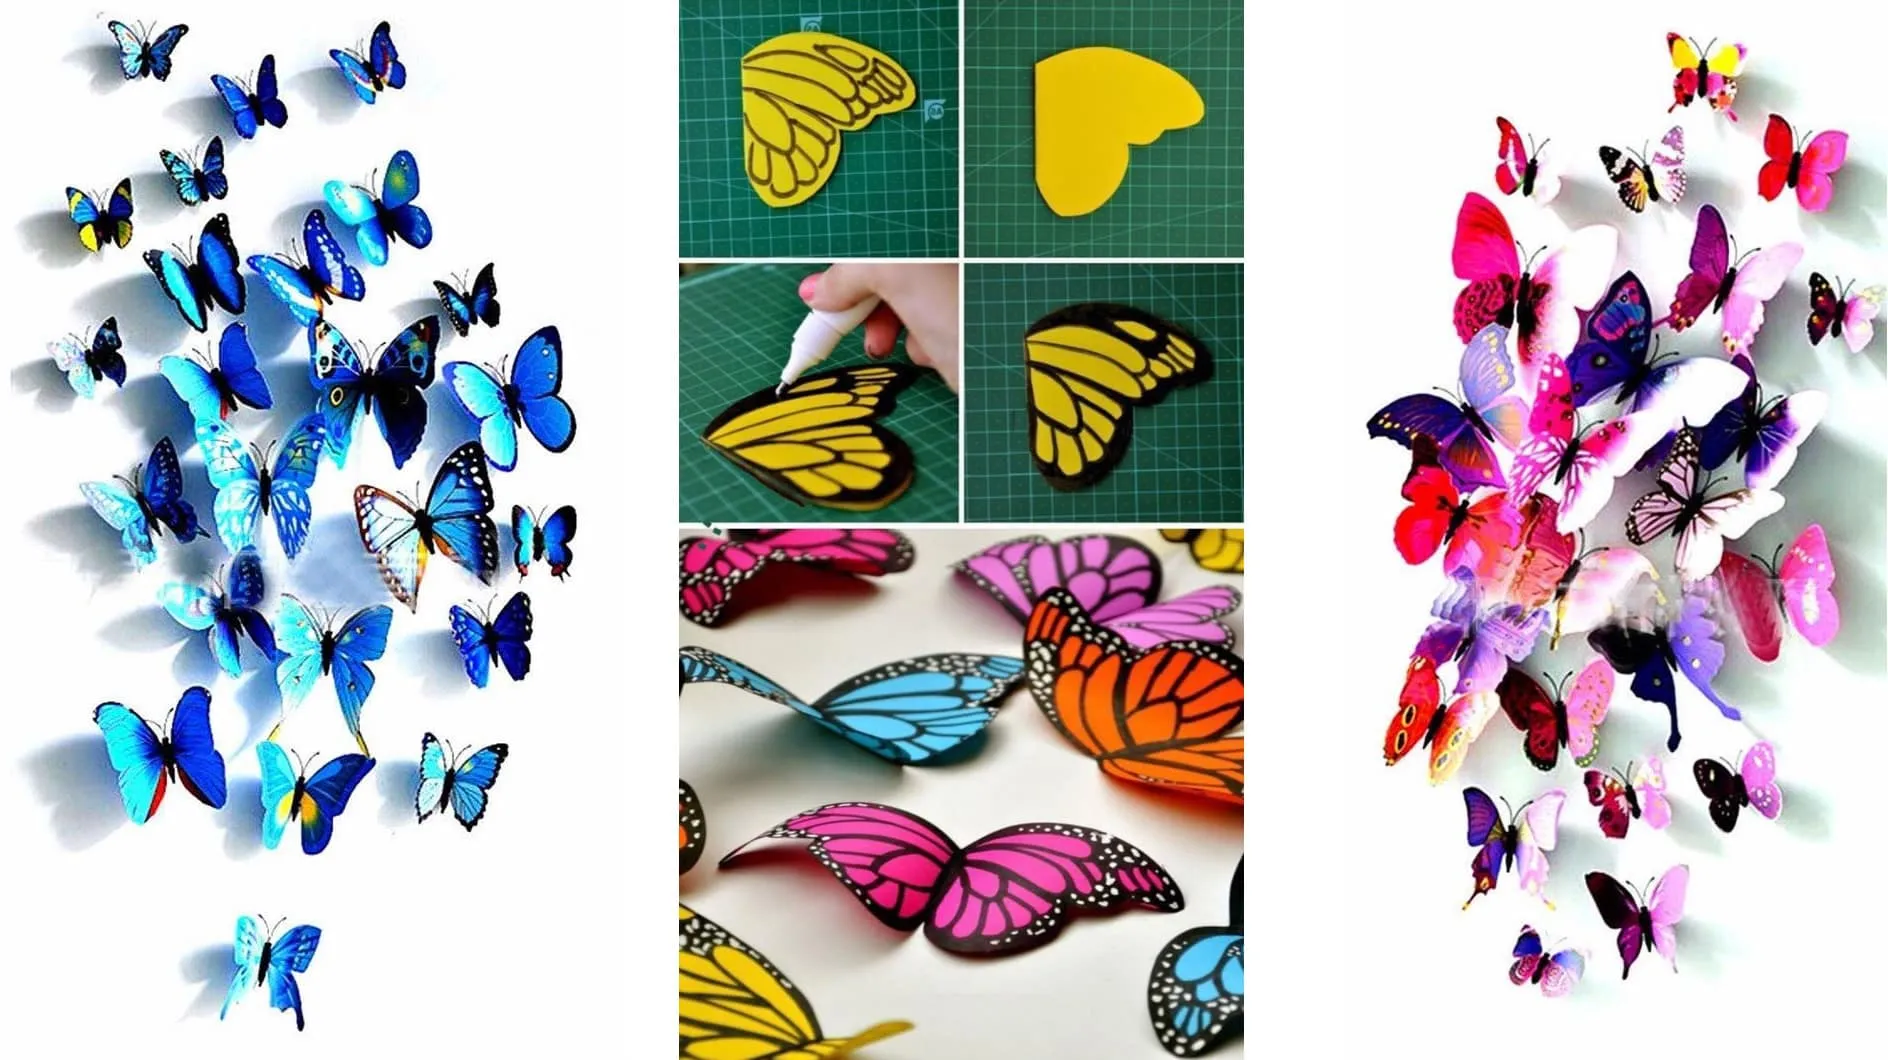 Объемную бабочку можно самостоятельно нарисовать и вырезать из цветной бумаги